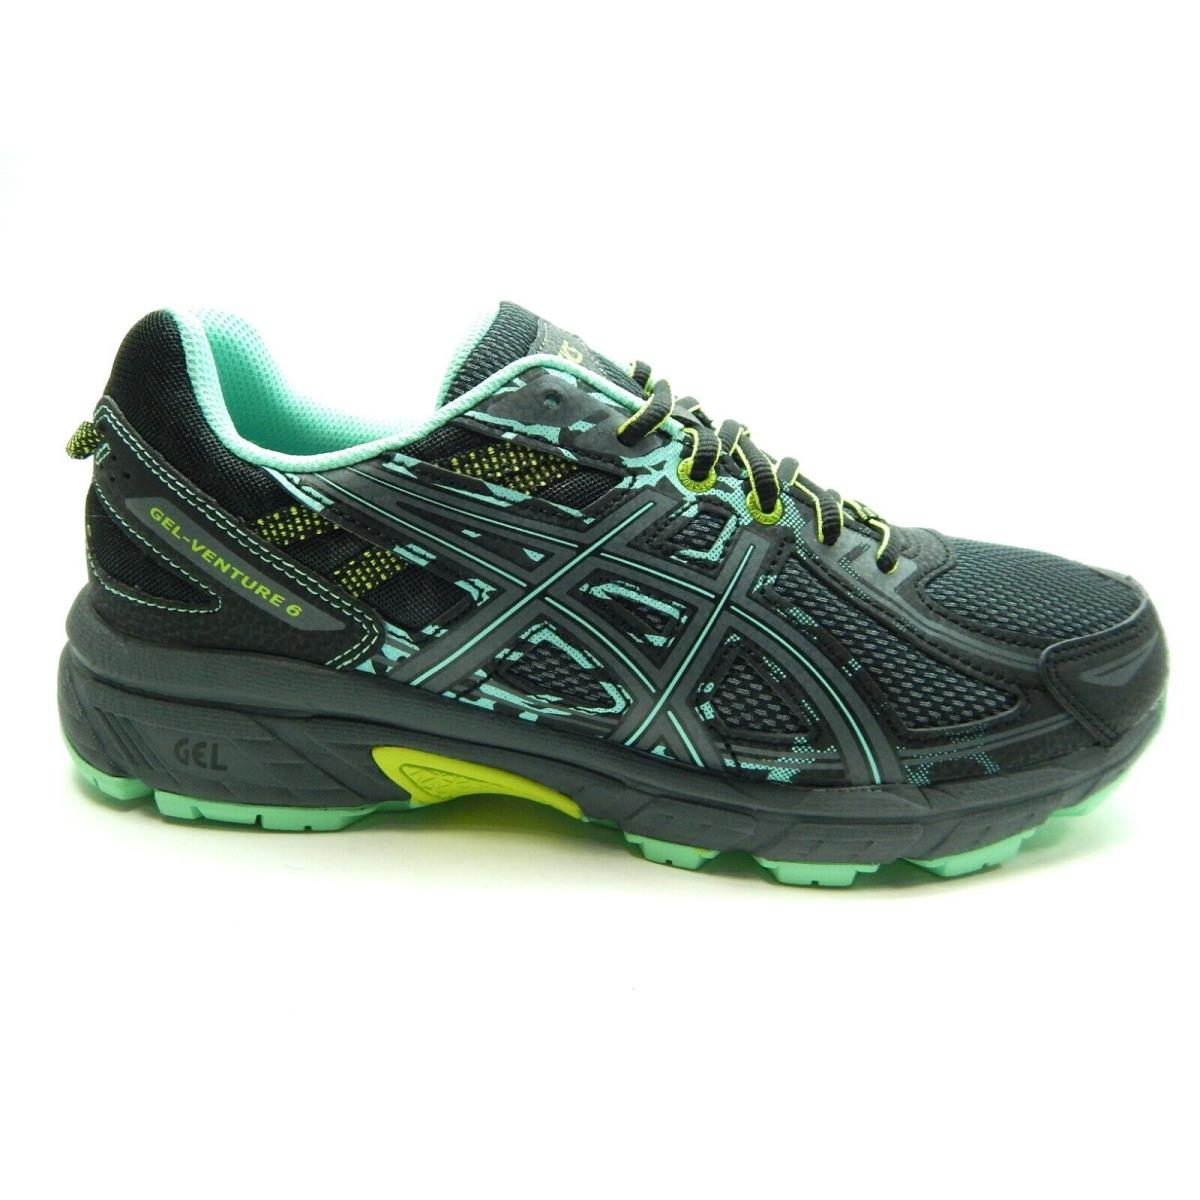 Asics Gel Venture 6 D Black Carbon Neon Lime Women Shoes Size 10.5 - Black